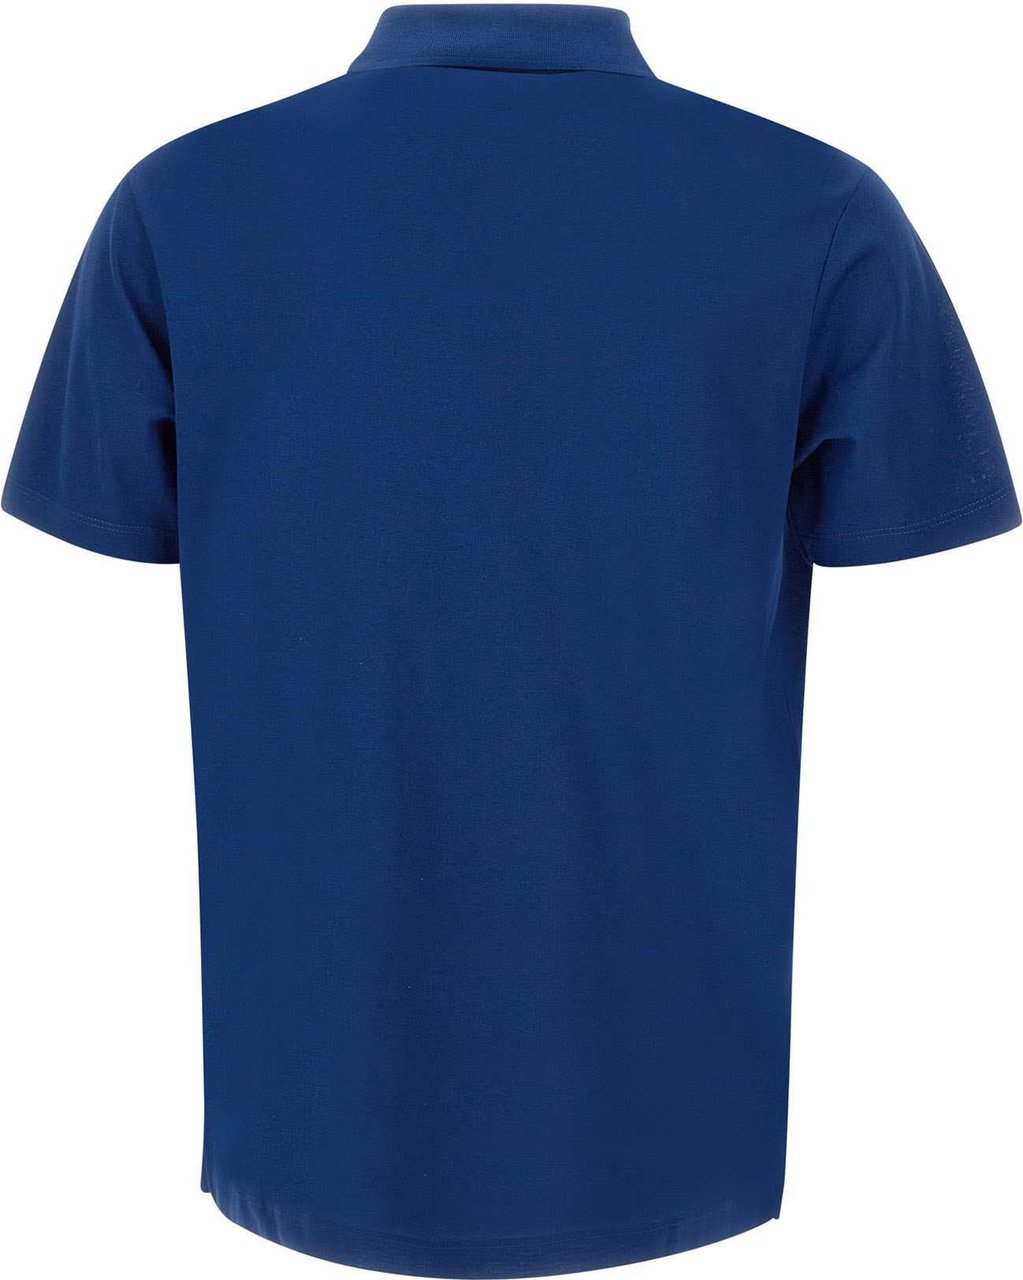 Paul & Shark Paul&shark T-shirts And Polos Blue Blauw